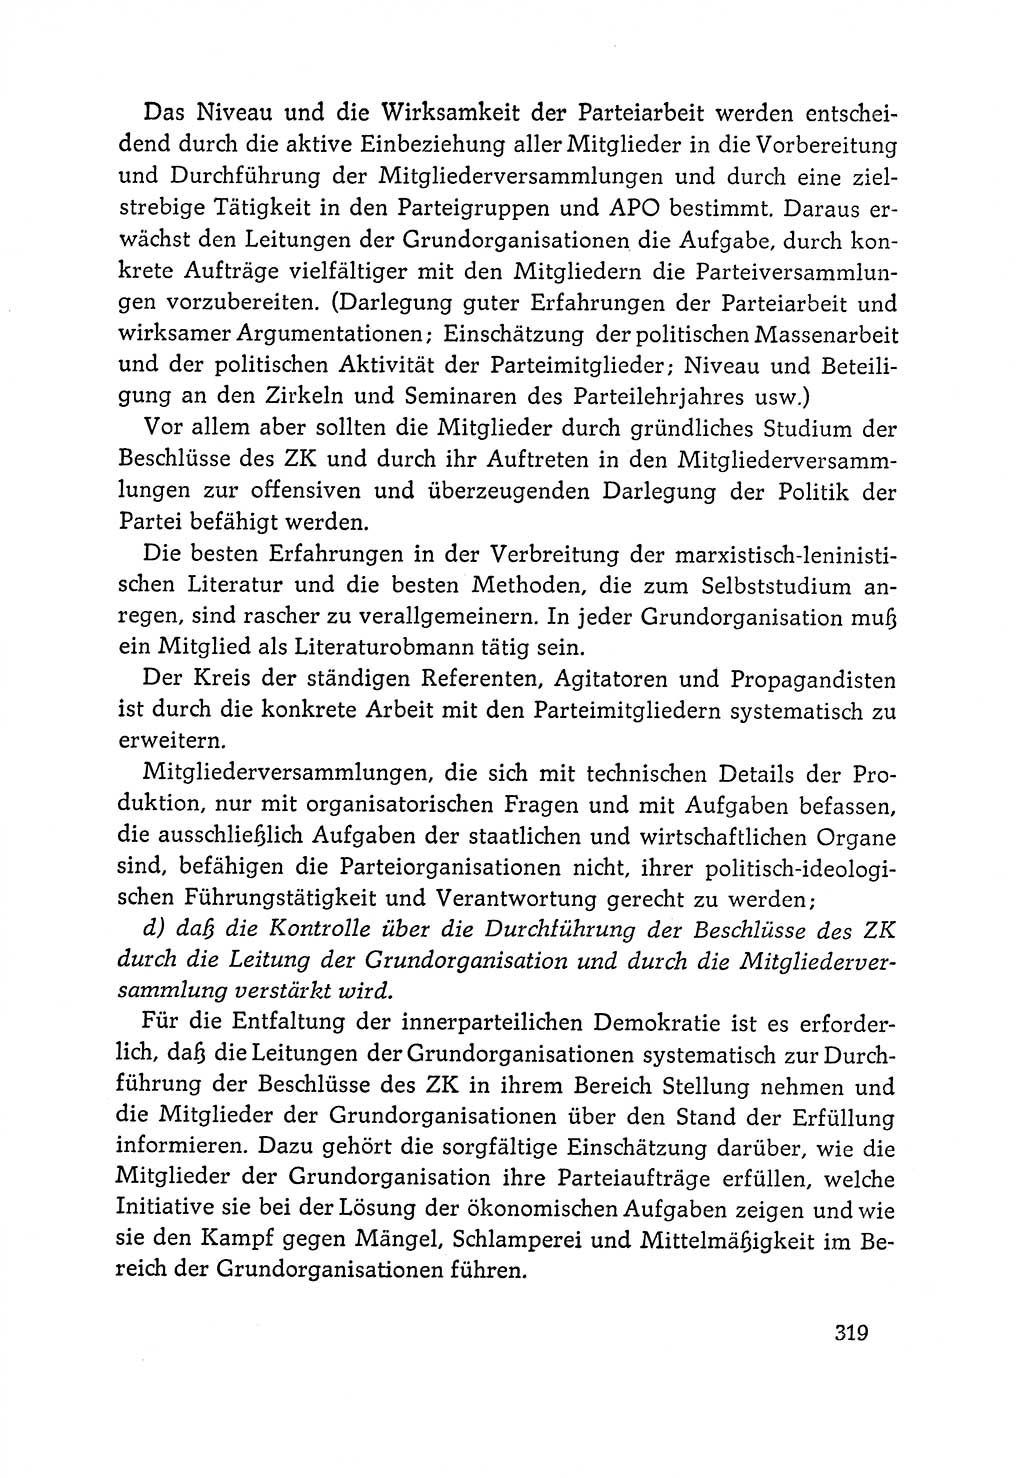 Dokumente der Sozialistischen Einheitspartei Deutschlands (SED) [Deutsche Demokratische Republik (DDR)] 1964-1965, Seite 319 (Dok. SED DDR 1964-1965, S. 319)